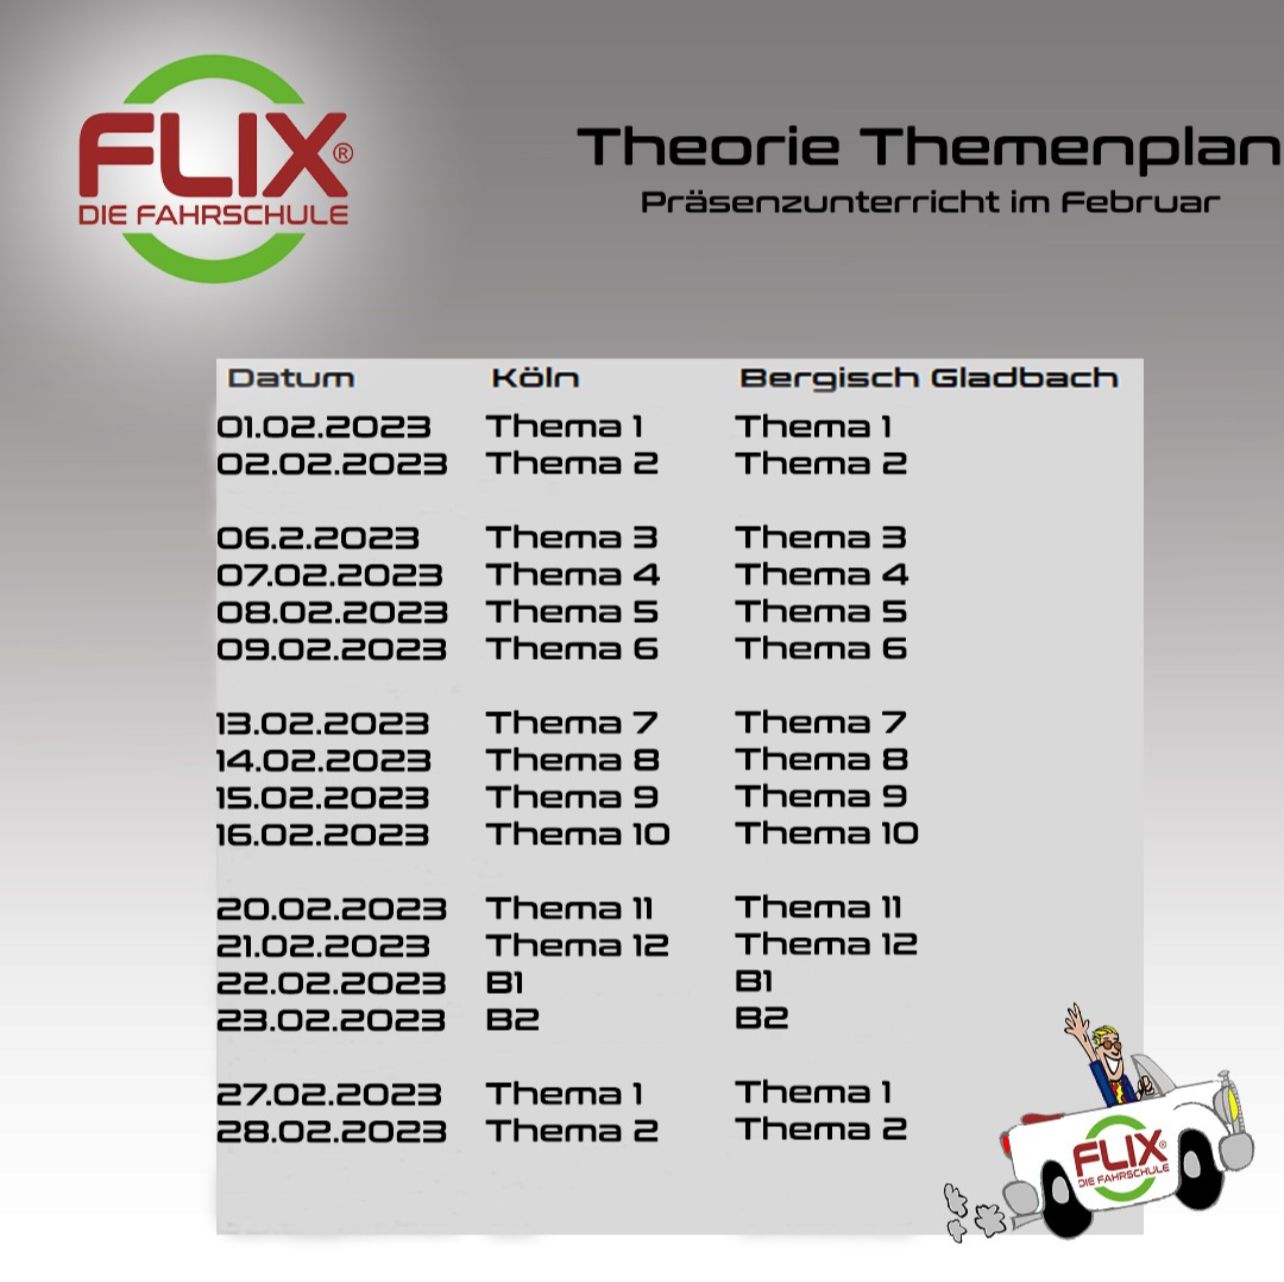 Flix die Fahrschule Theorieplan, Flix Fahrschule Theorie